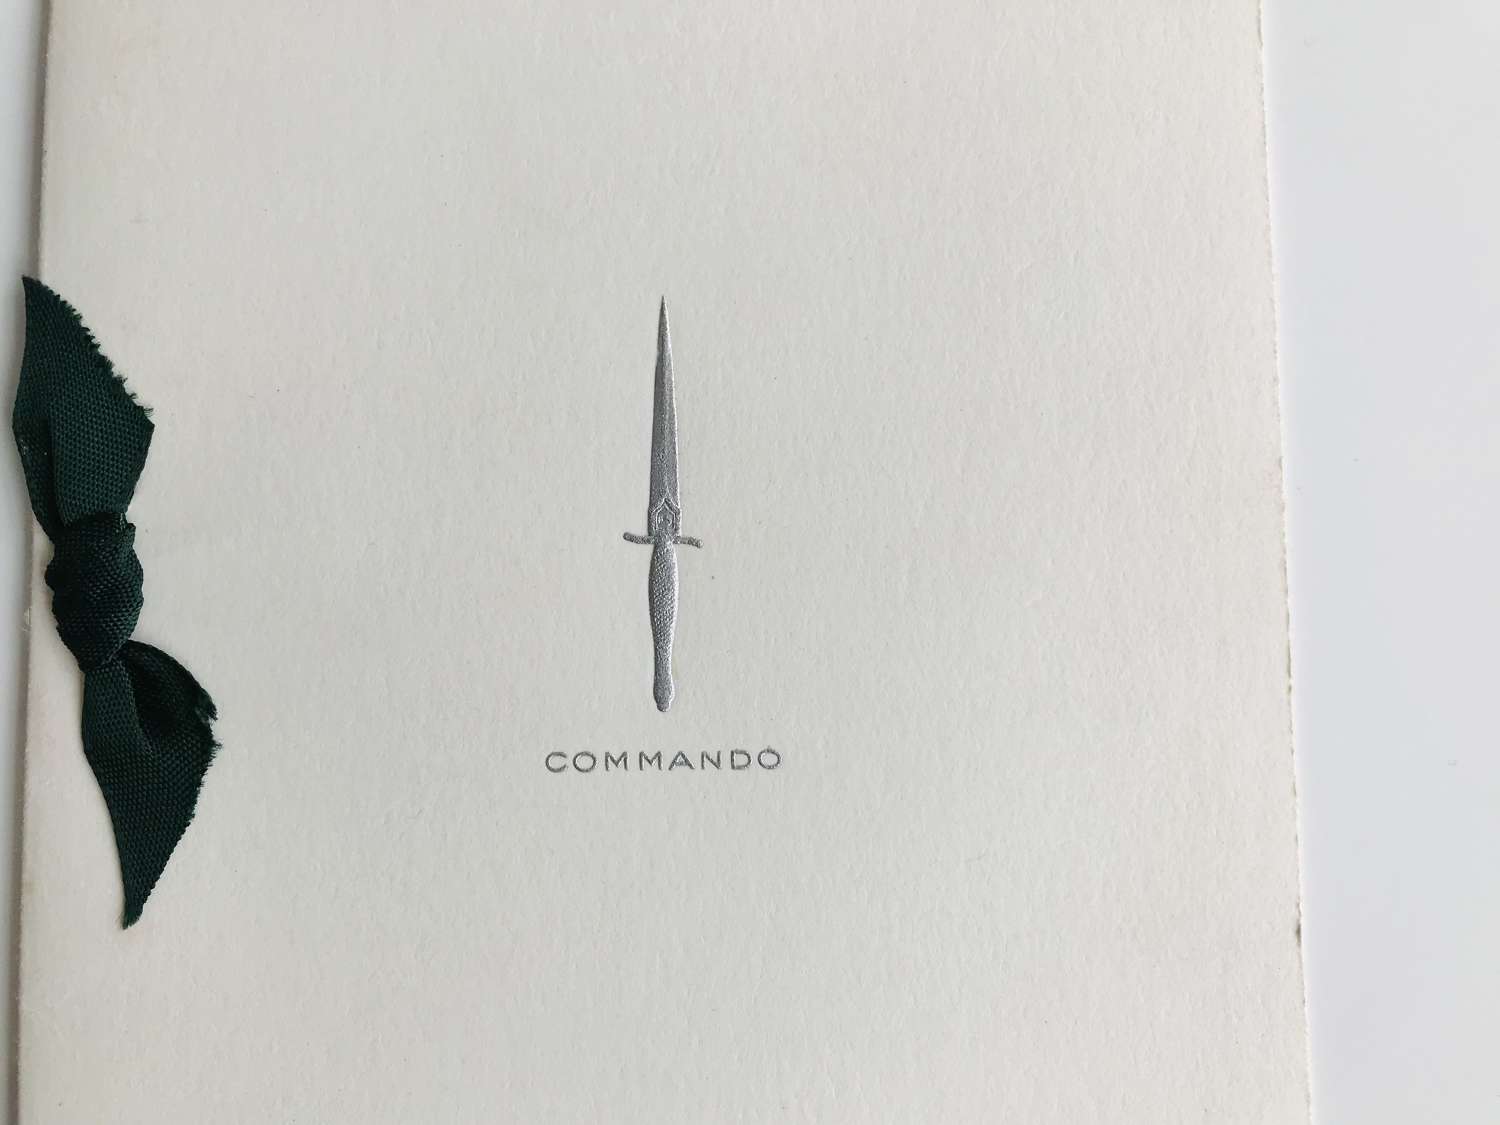 Commando Association Christmas card